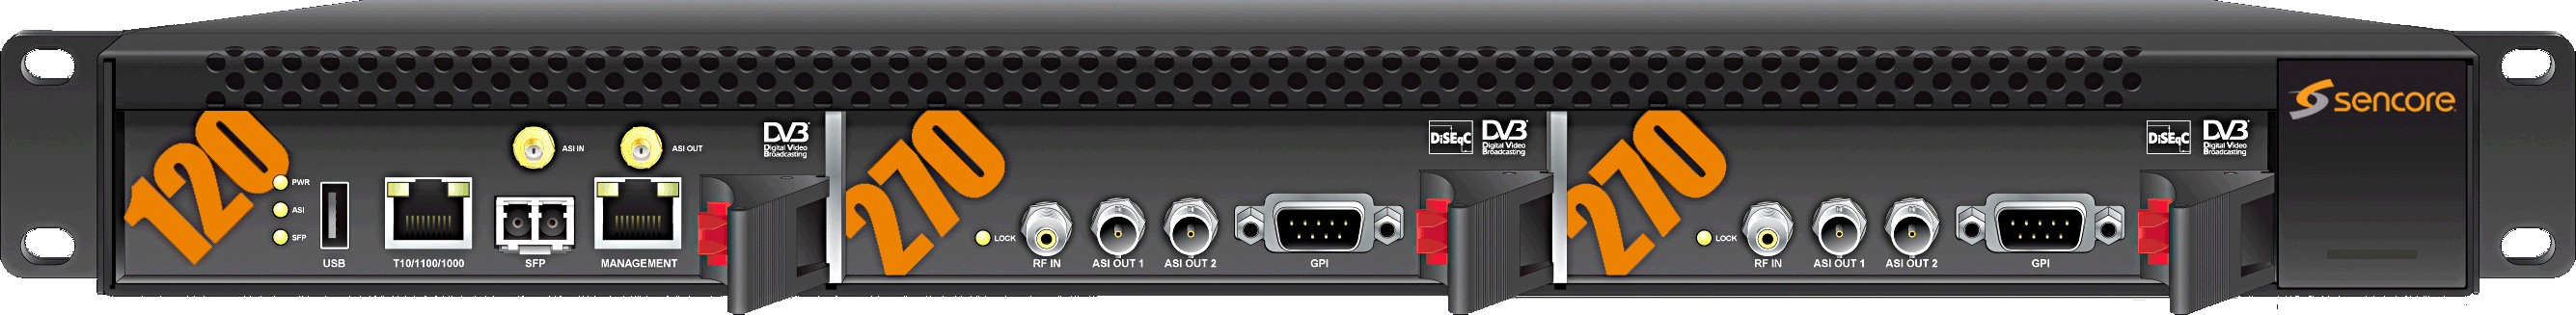 VB270 VideoBRIDGE Модуль DVB-S/S2 QPSK пробника